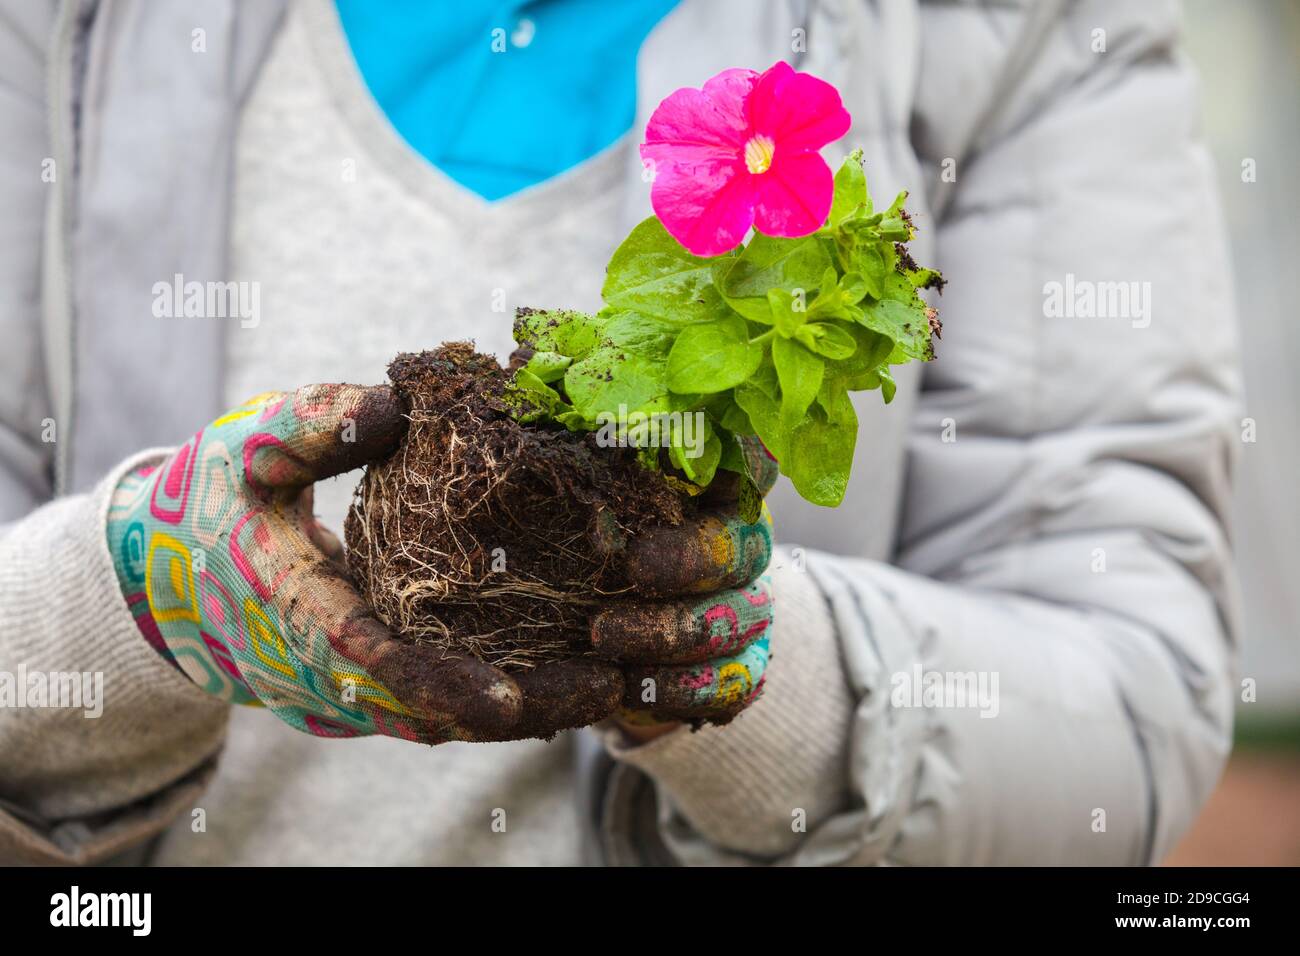 Il giardiniere mantiene la petunia con fiore rosa, foto ravvicinata con messa a fuoco morbida selettiva Foto Stock